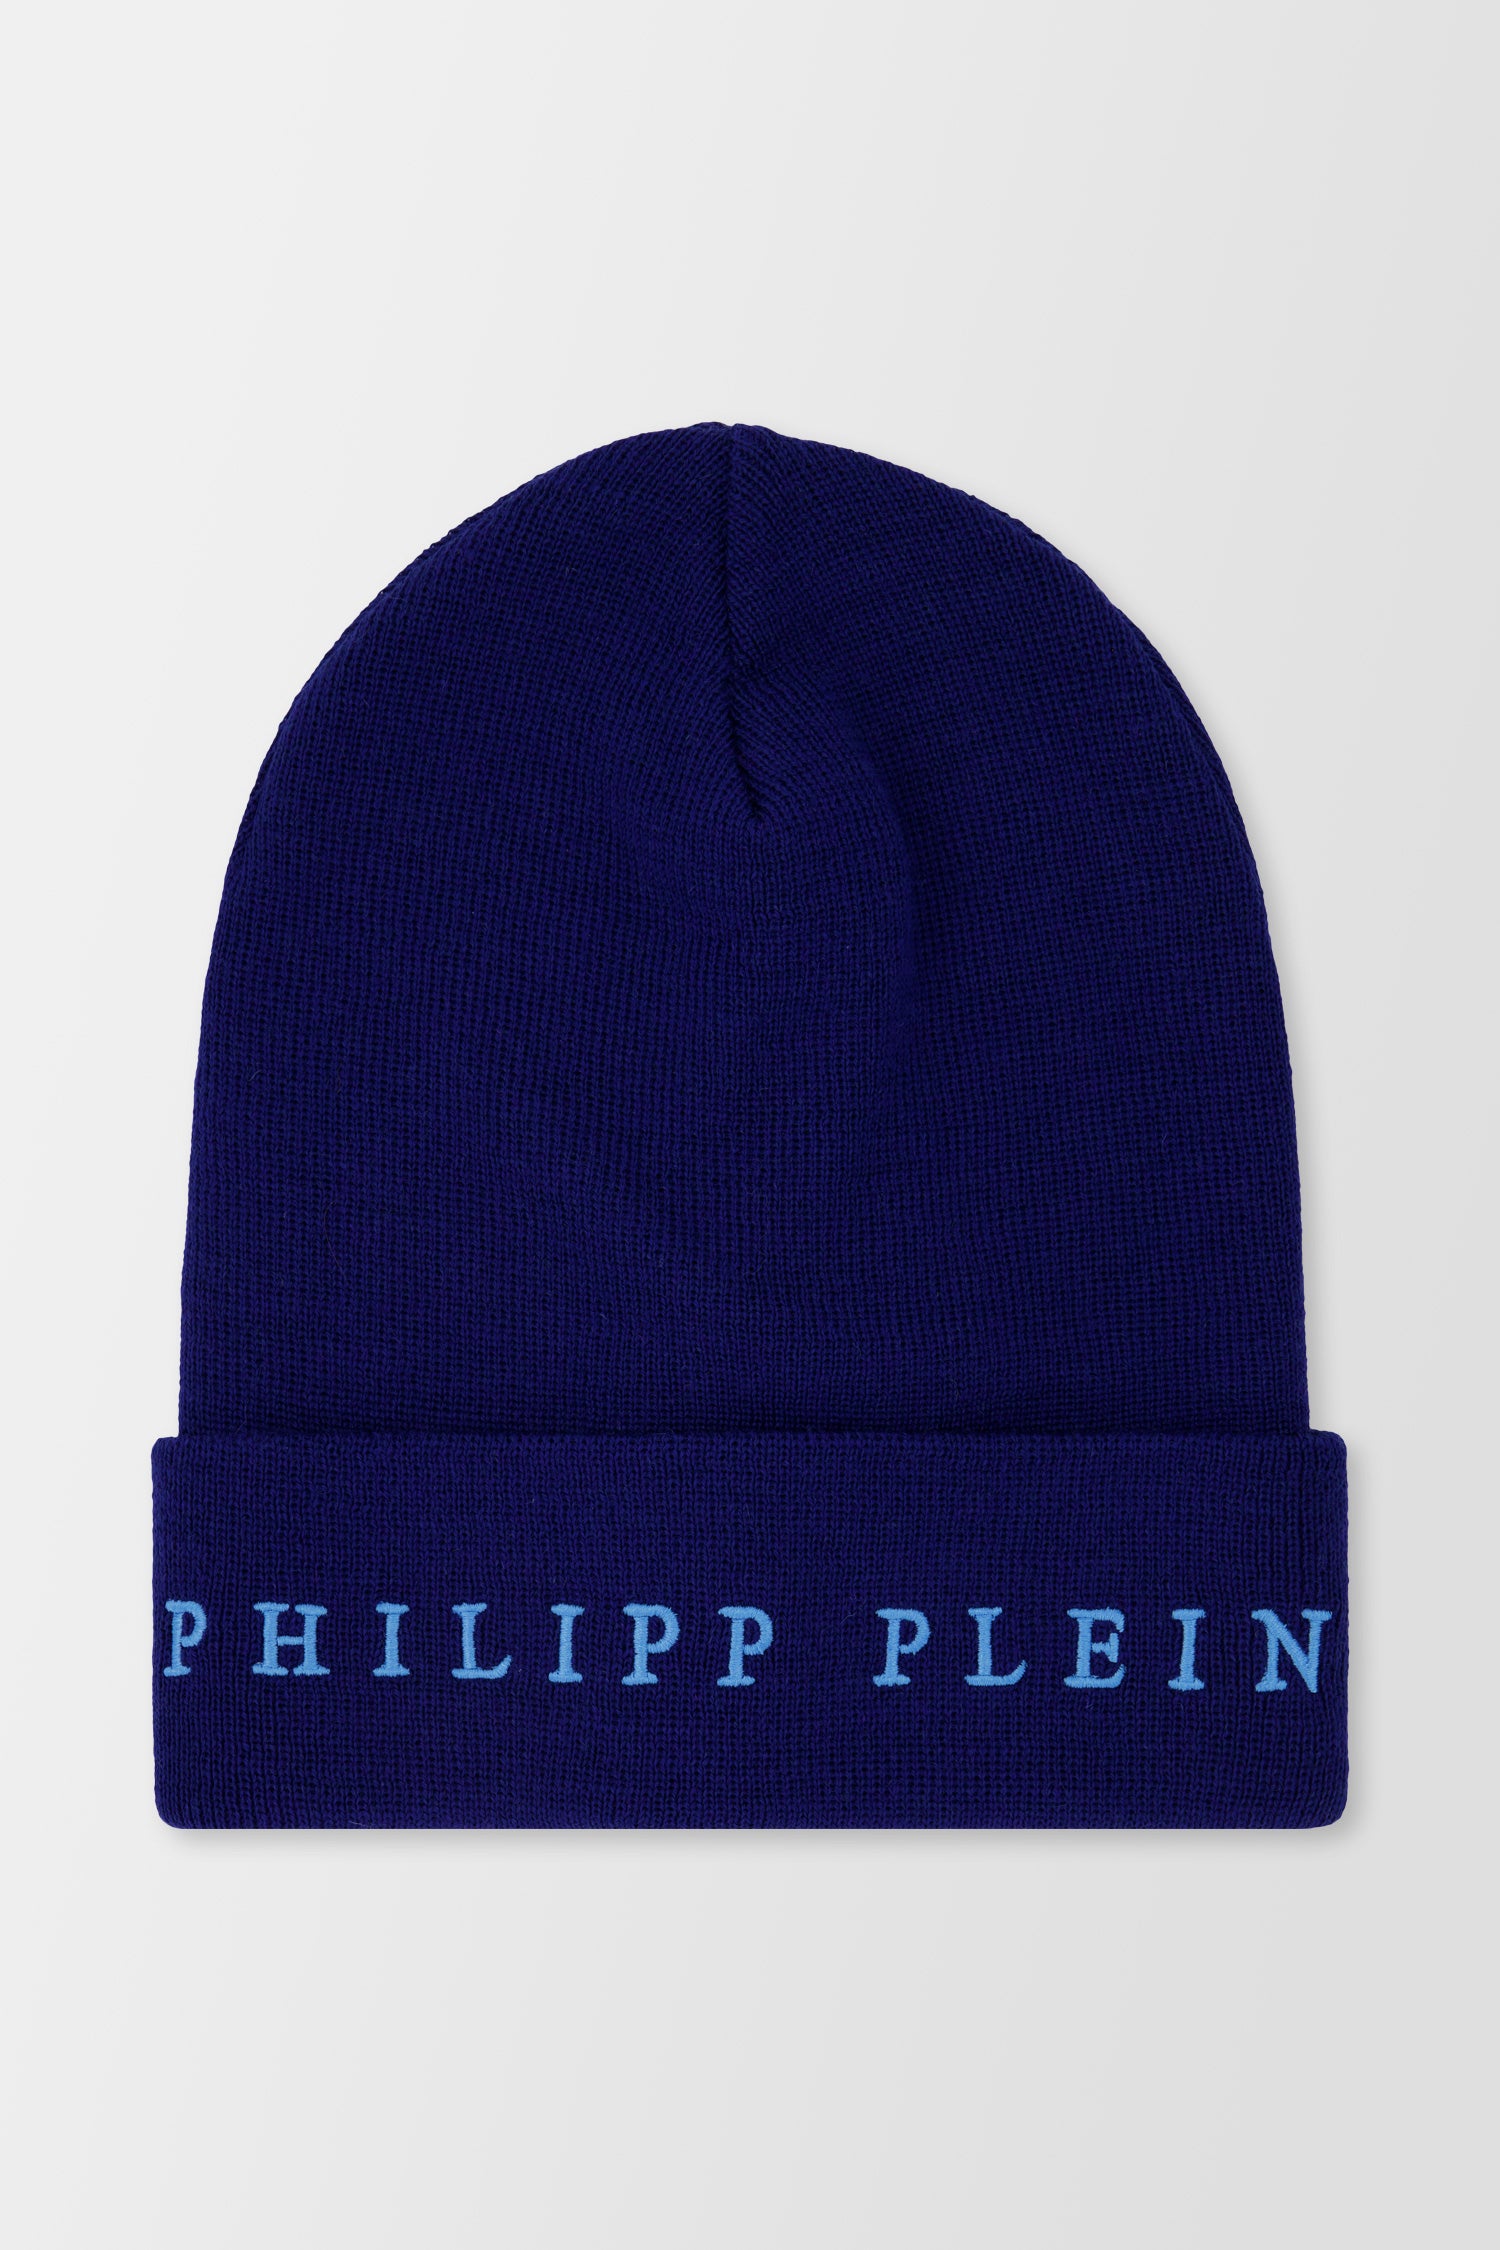 Philipp Plein Navy Hat